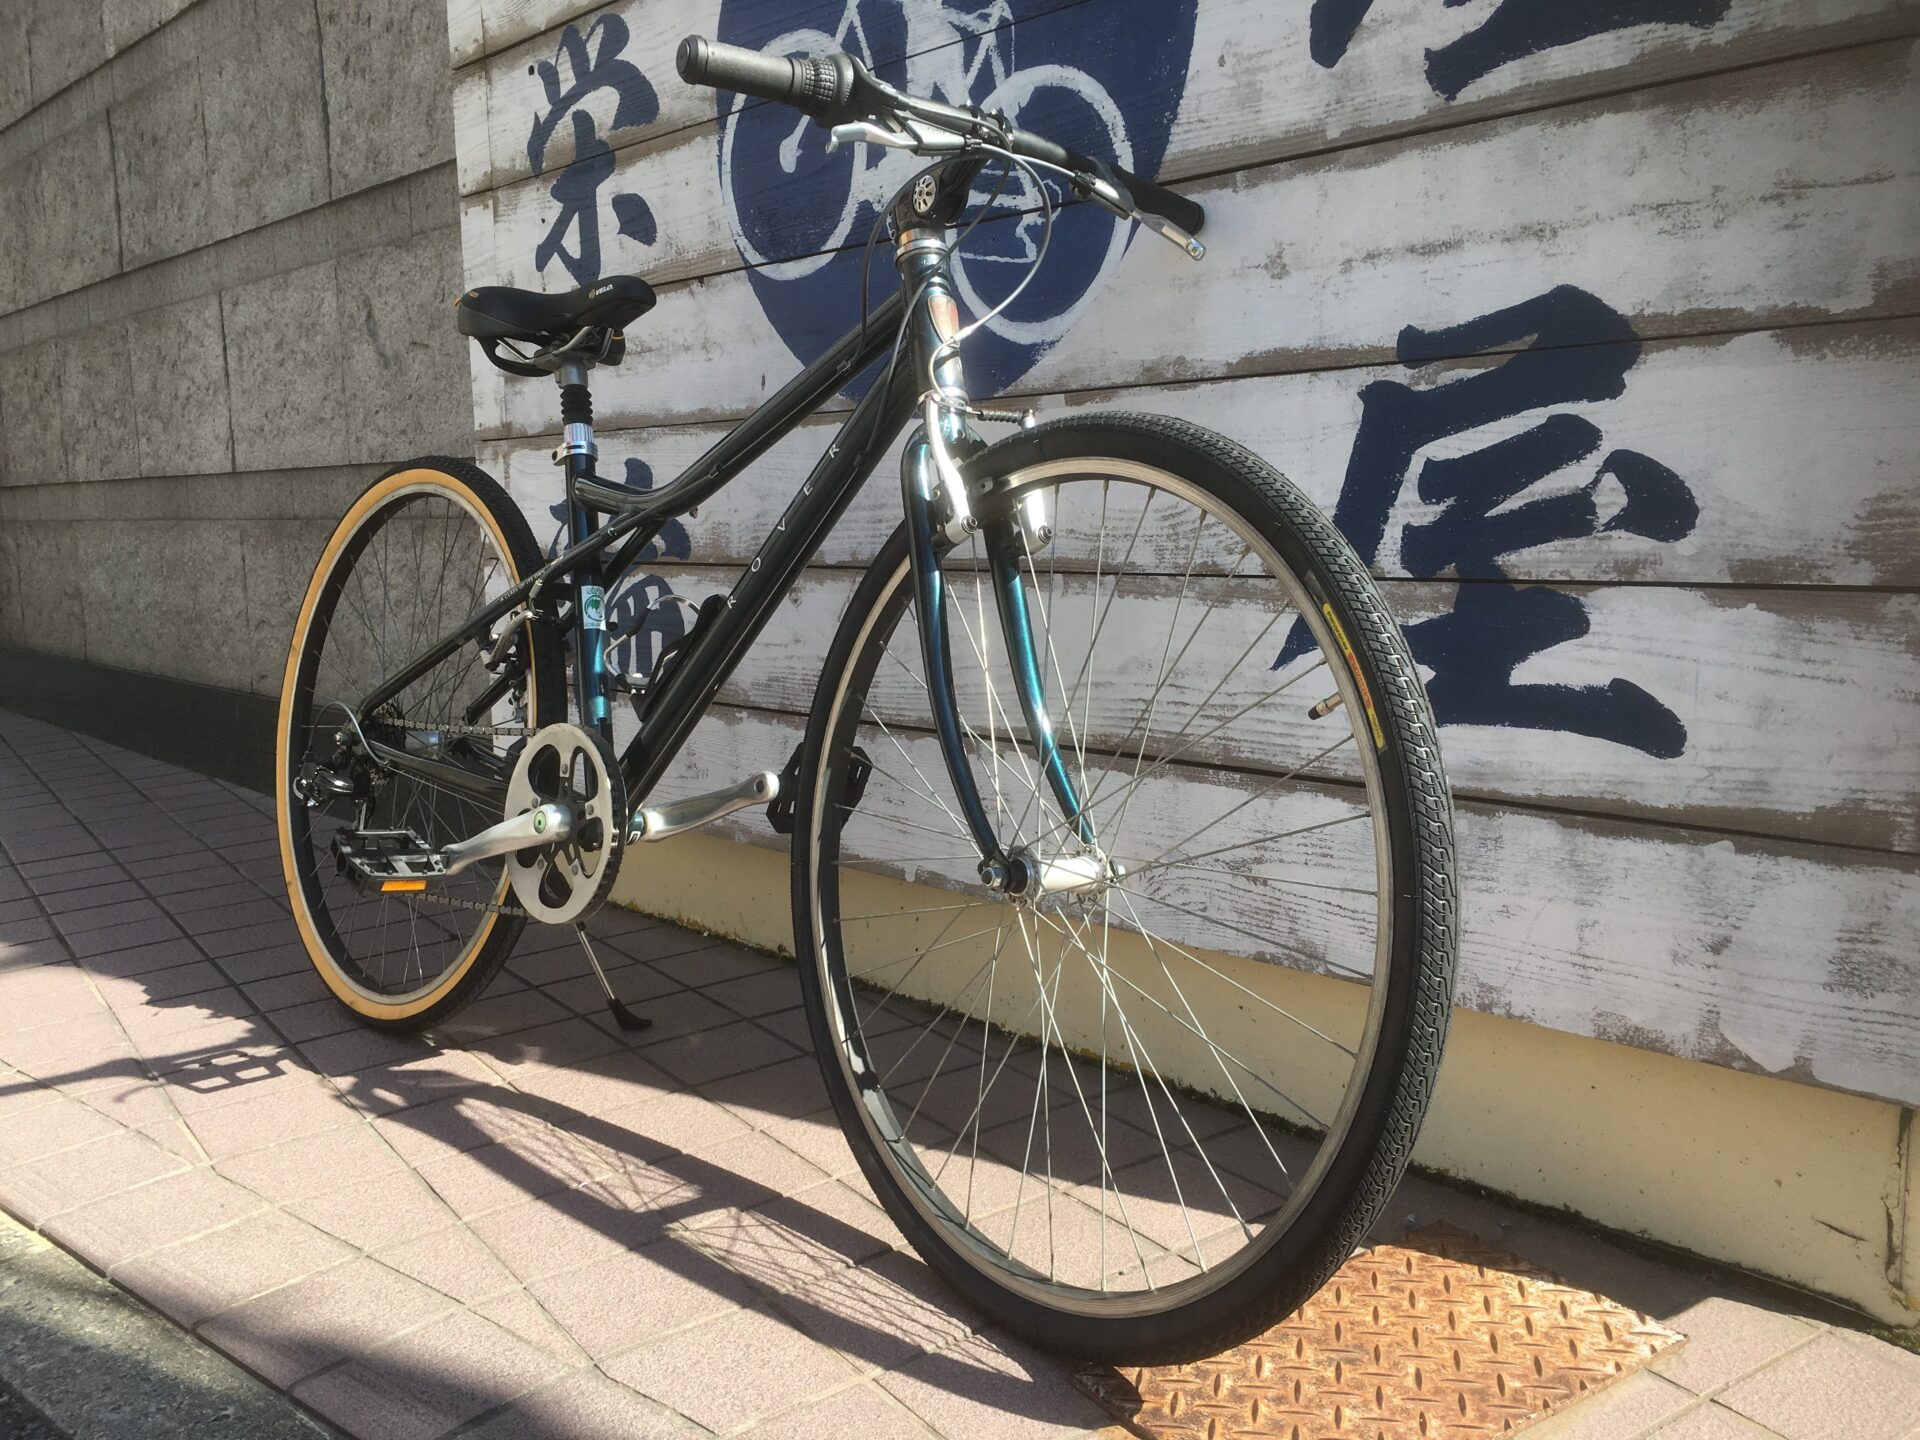 中古クロスバイク展示中です。 | 京都の中古自転車・新車販売 サイクル